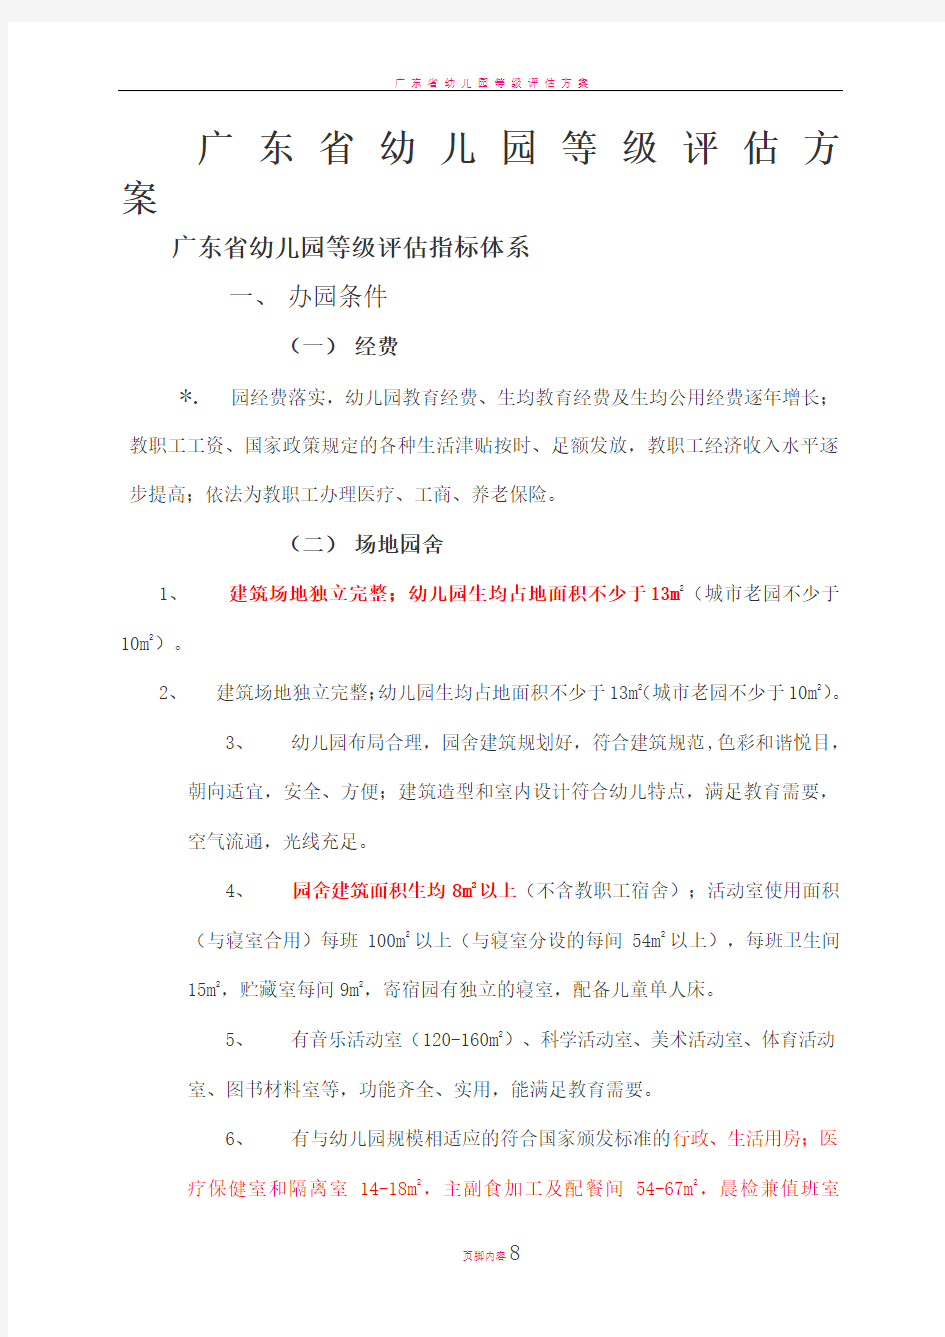 广东省幼儿园等级评估指标体系